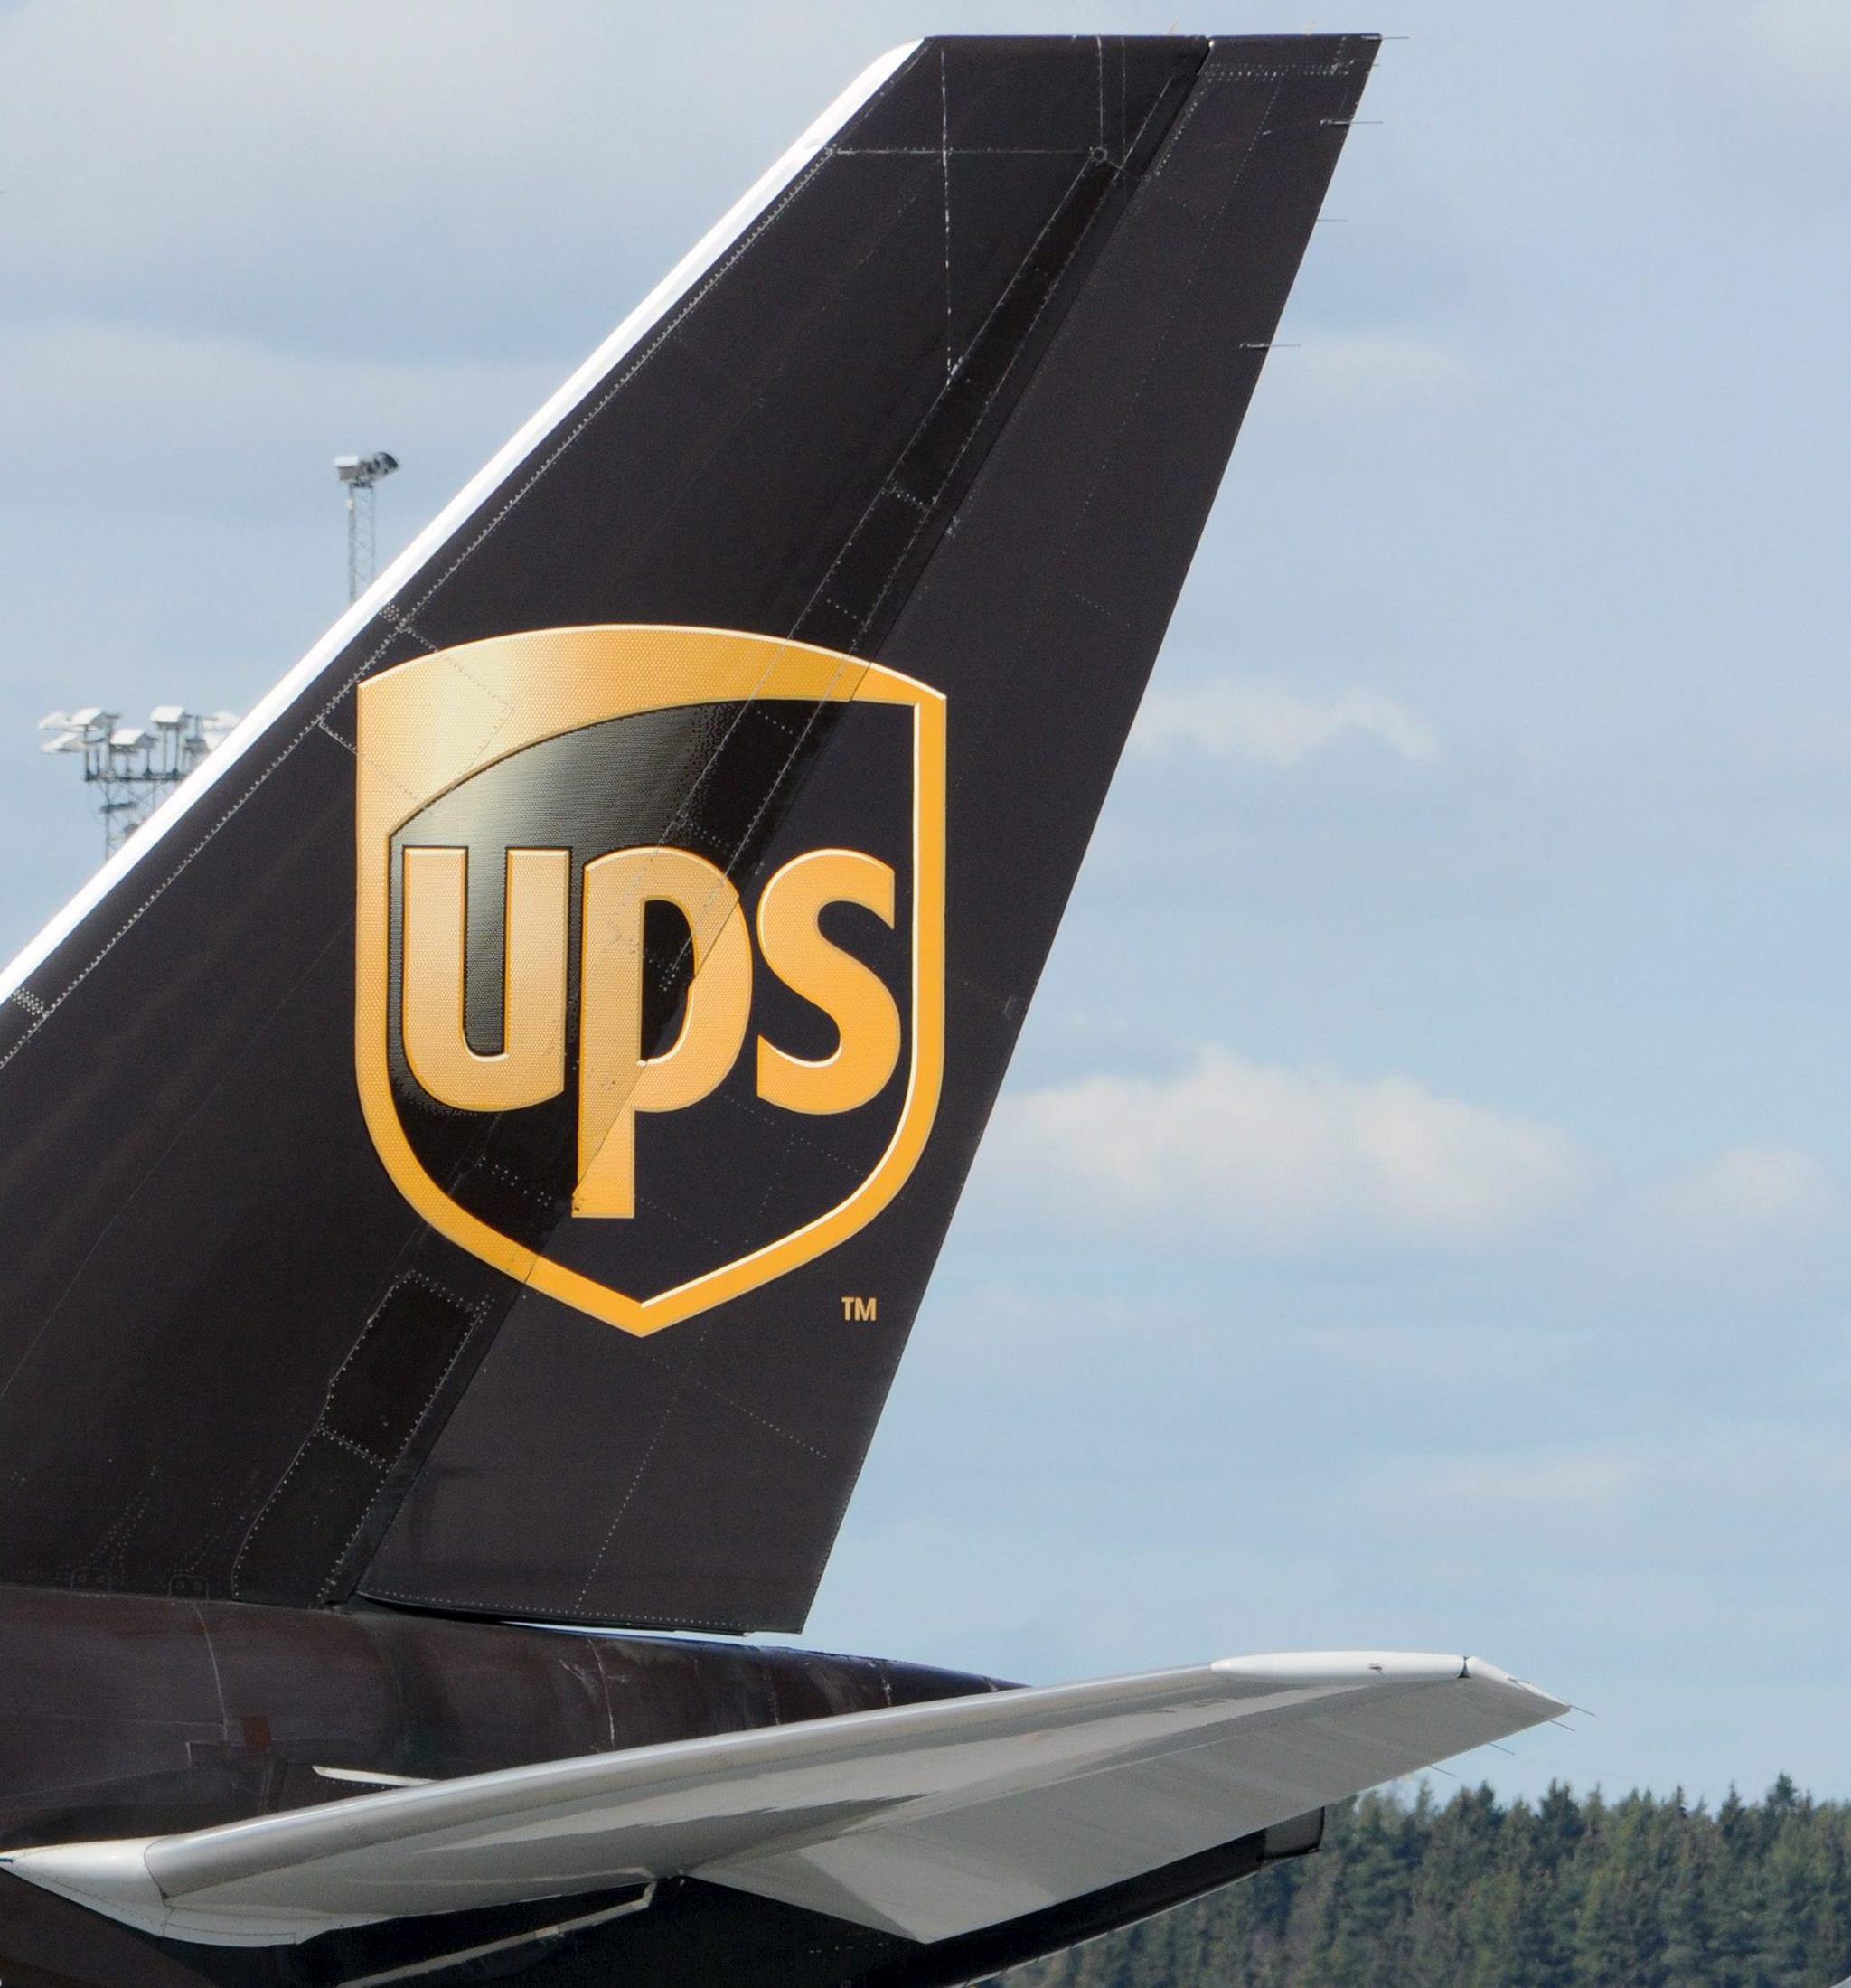 UPS ganó 911 millones de dólares en el primer trimestre de 2014